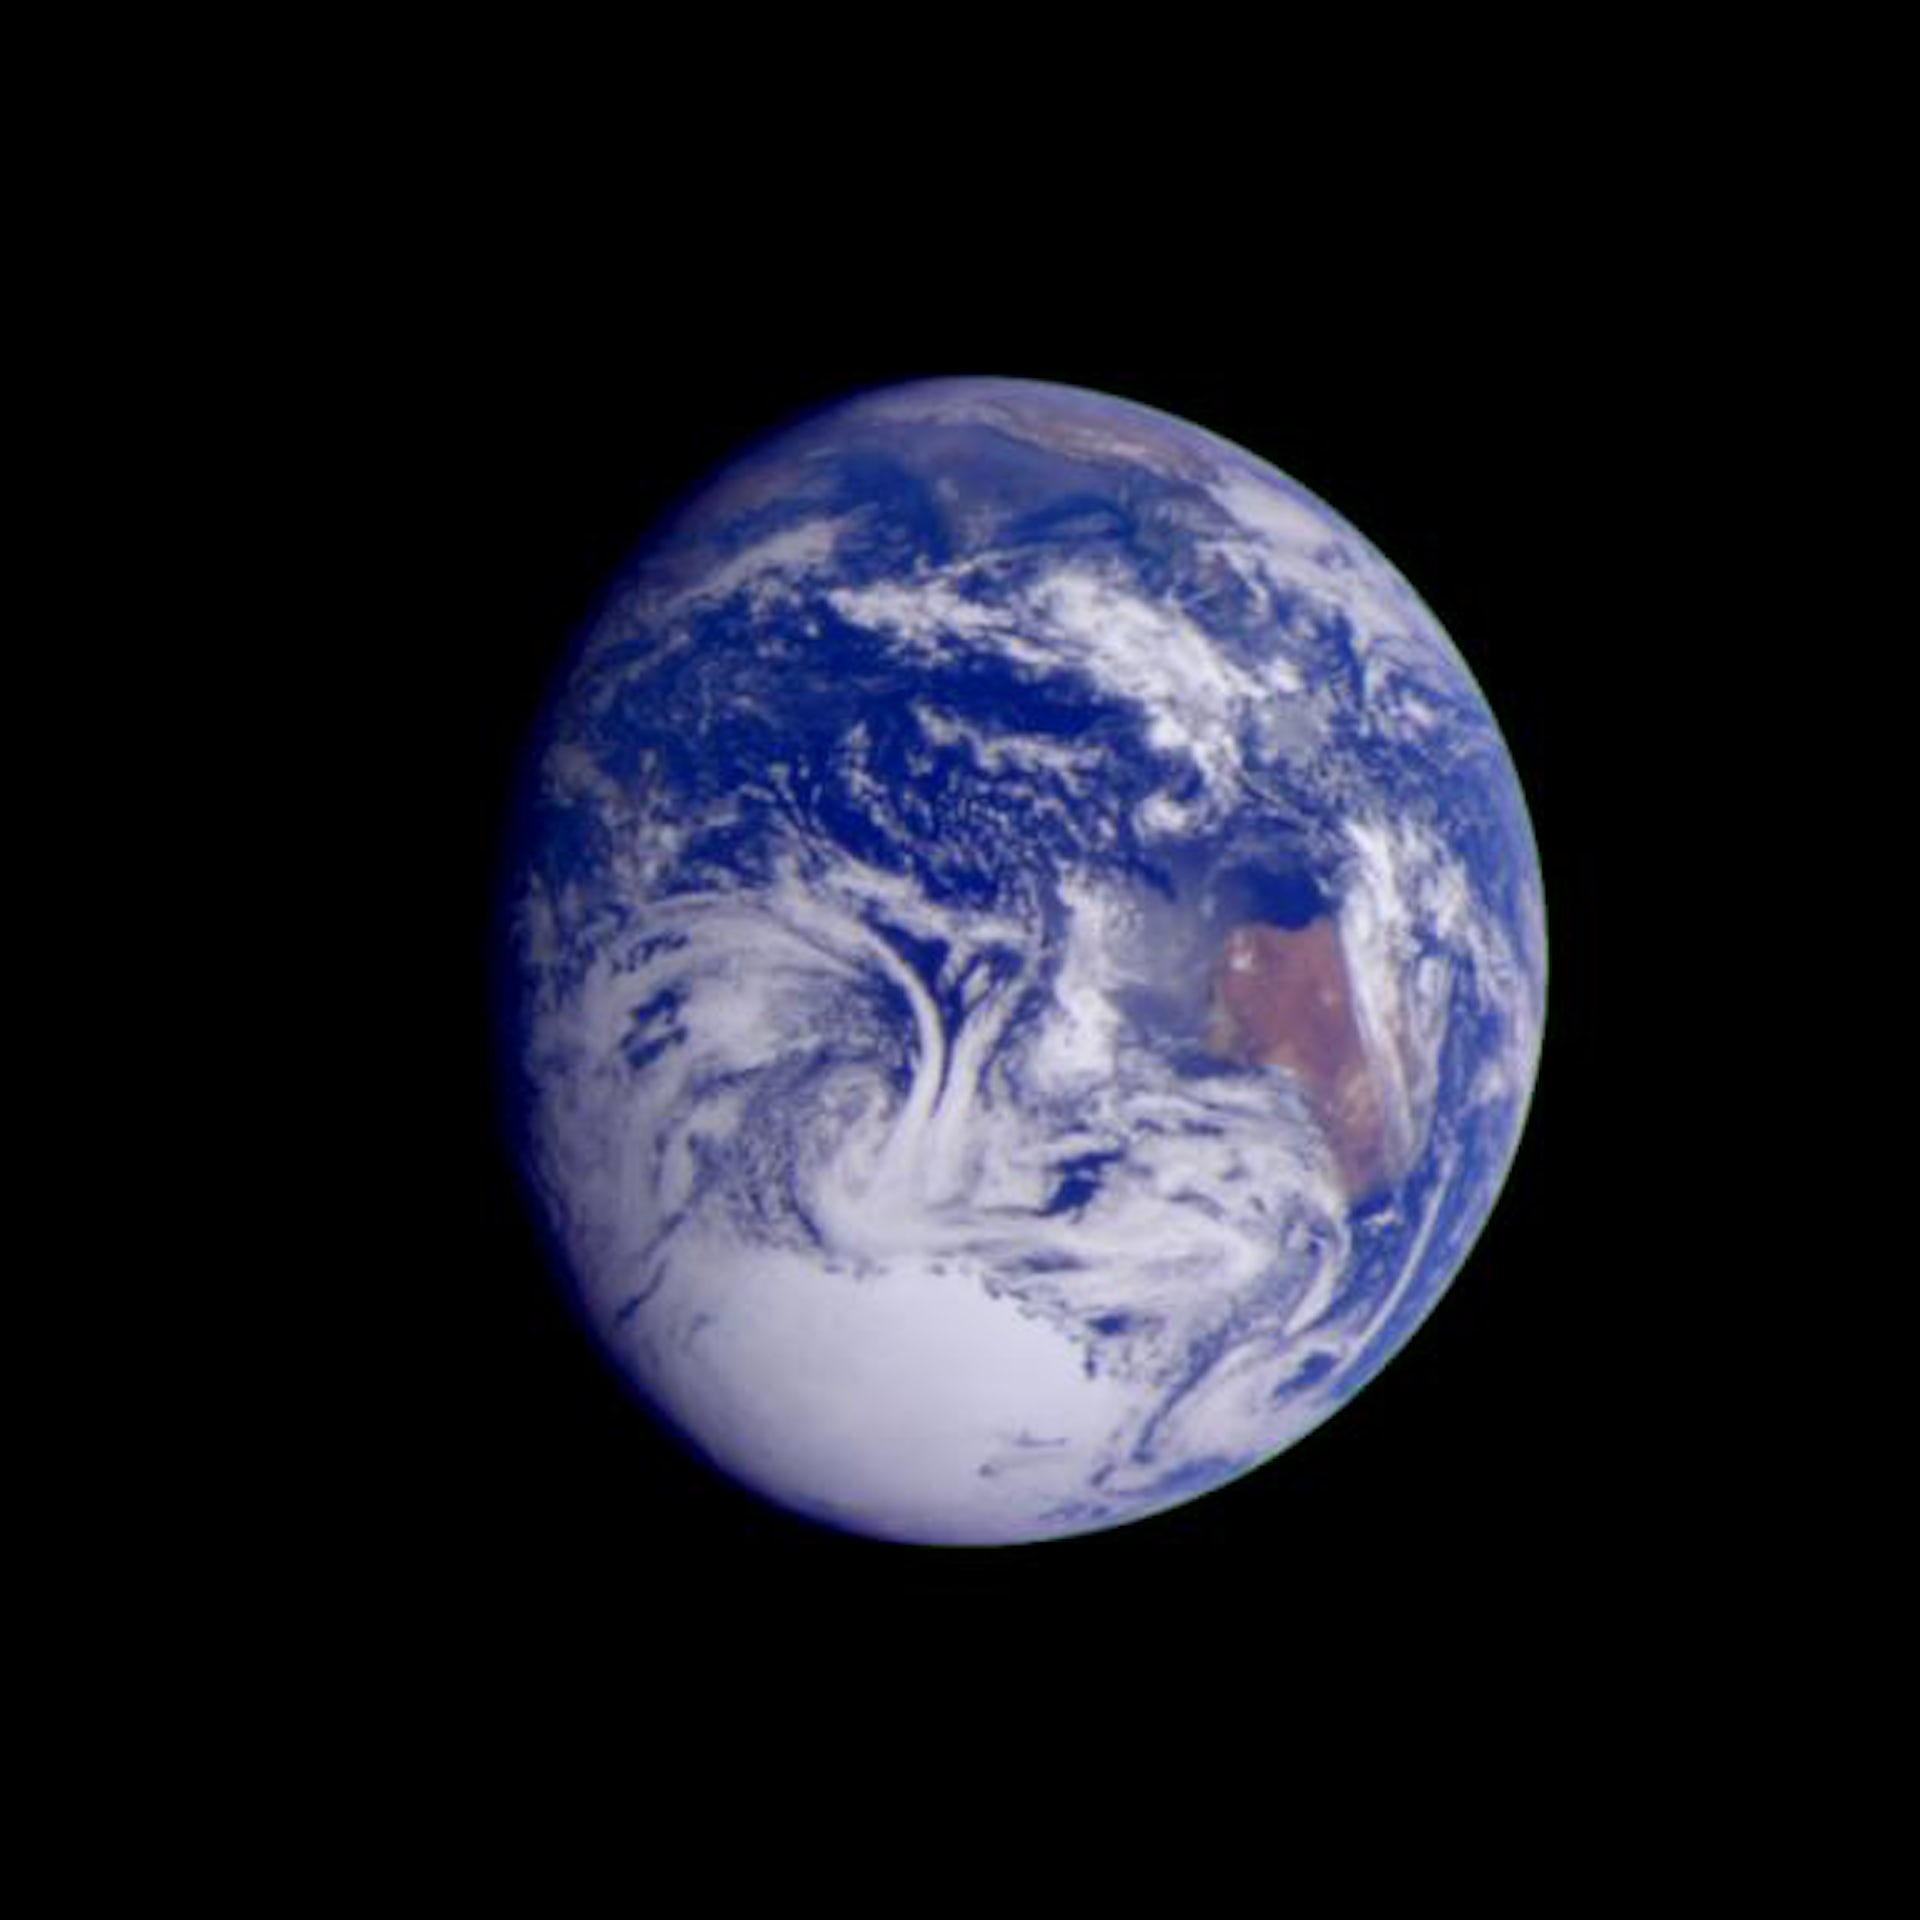 Imagem tirada pela sonda Galileo a uma distância de 2.4 milhões de km.